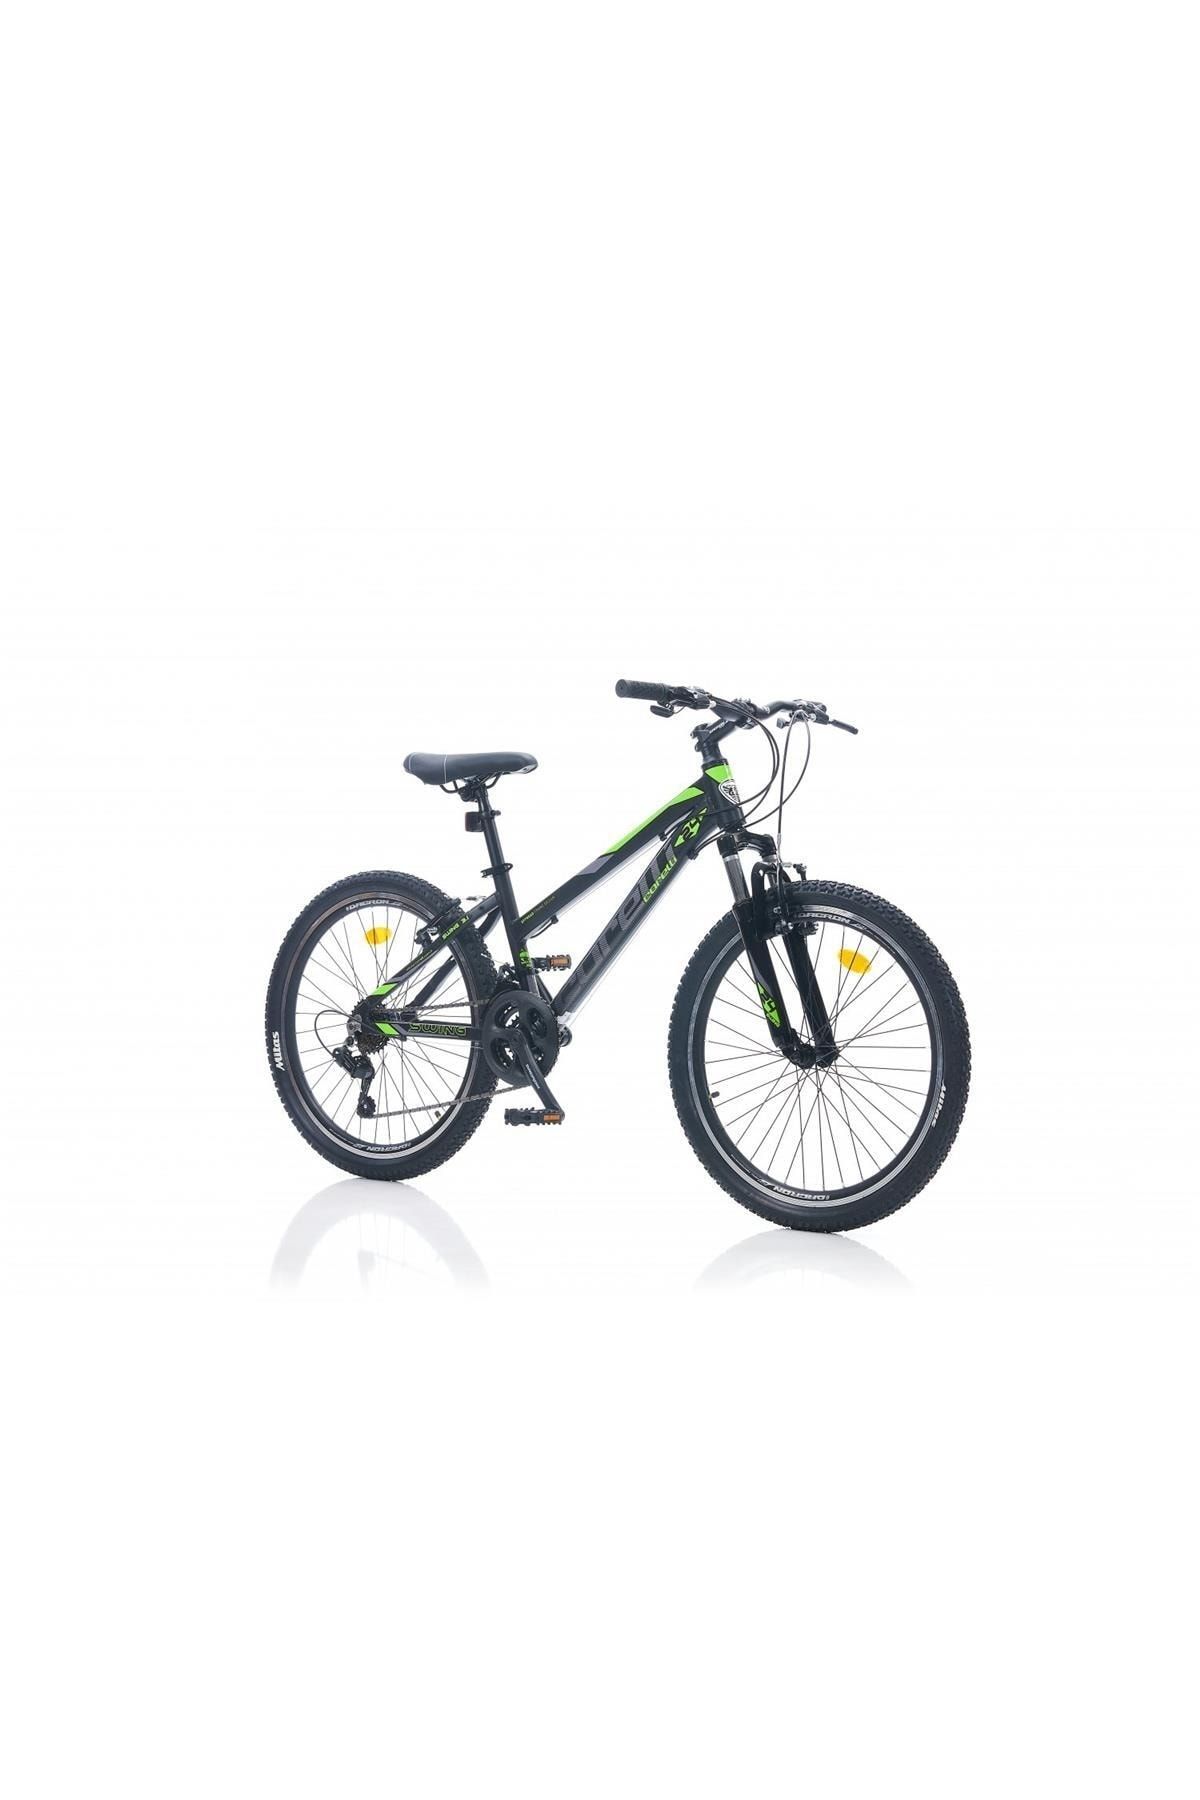 Corelli Swing 3.1 24 Jant 13'' V Fren Dağ Bisikleti Siyah-yeşil